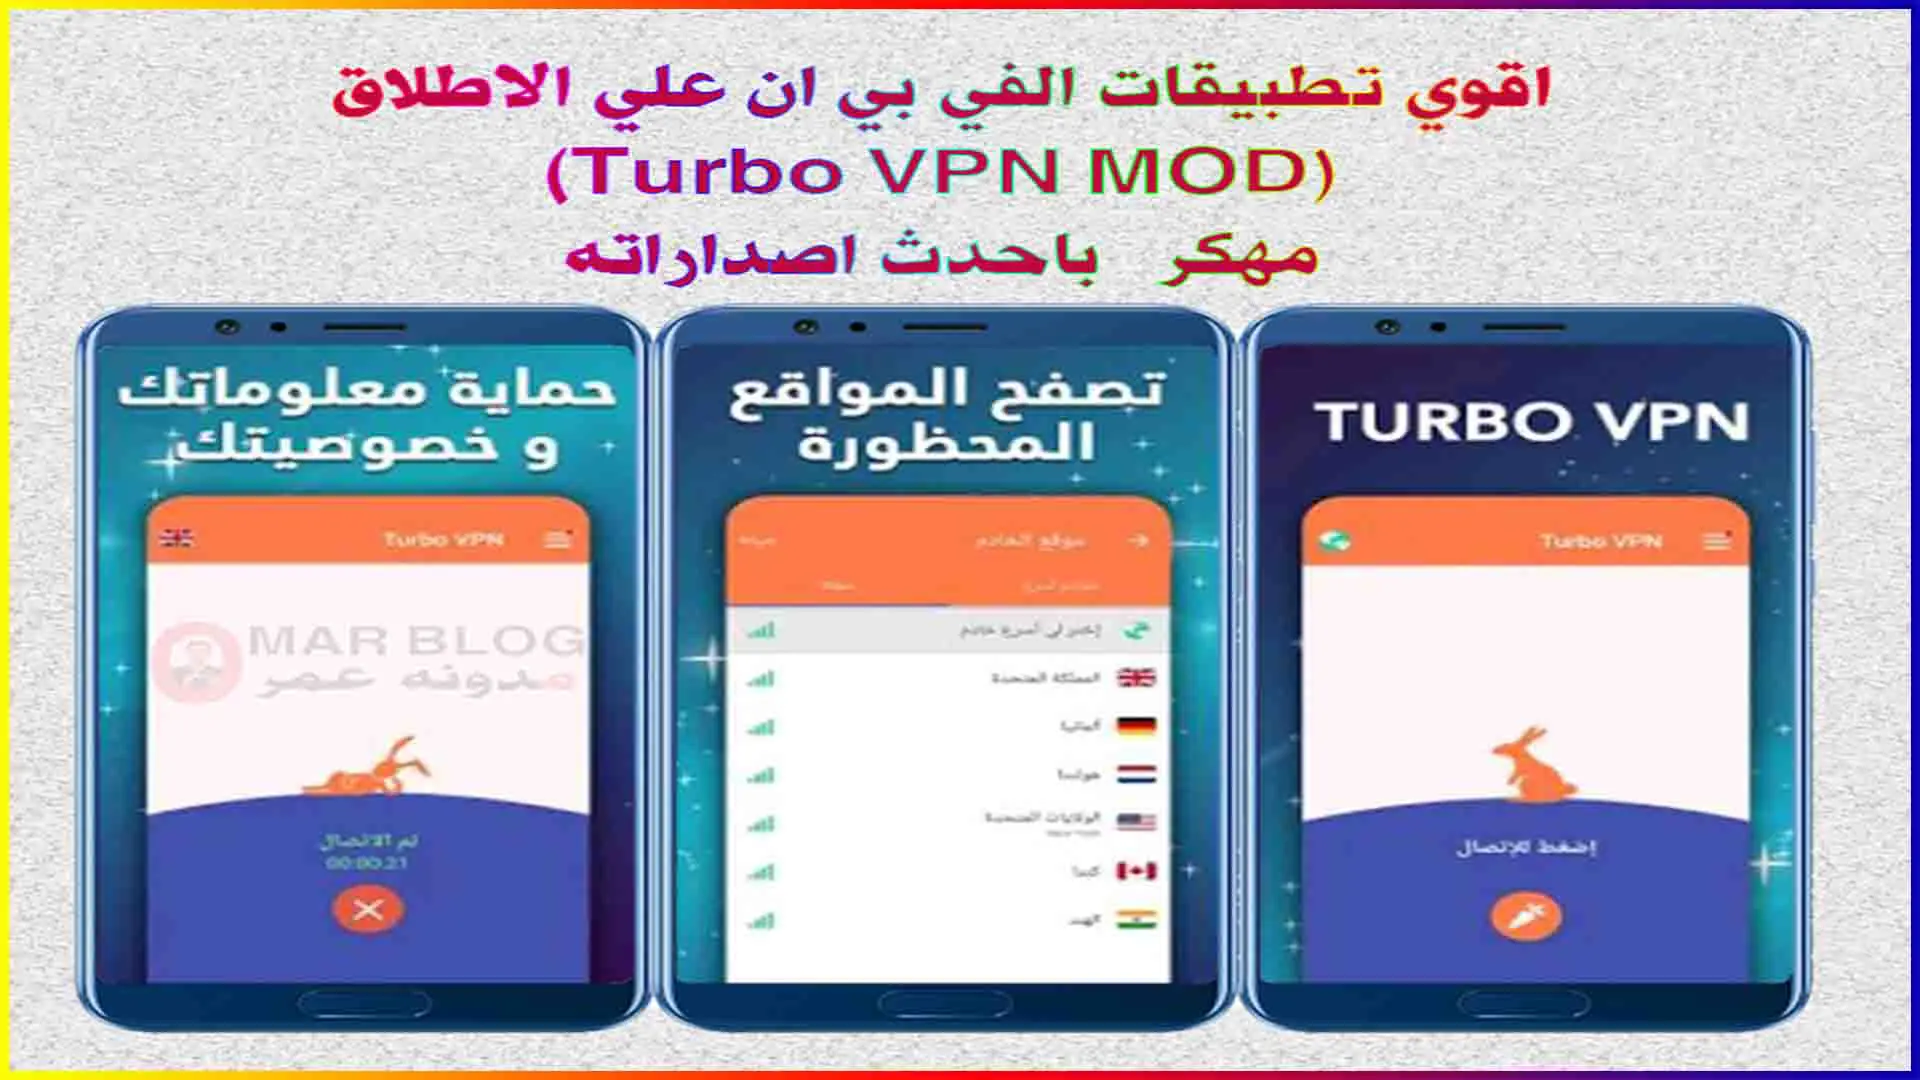 تحميل افضل تطبيقات VPN مهكرة للاندرويد 2021 (Turbo VPN MOD)